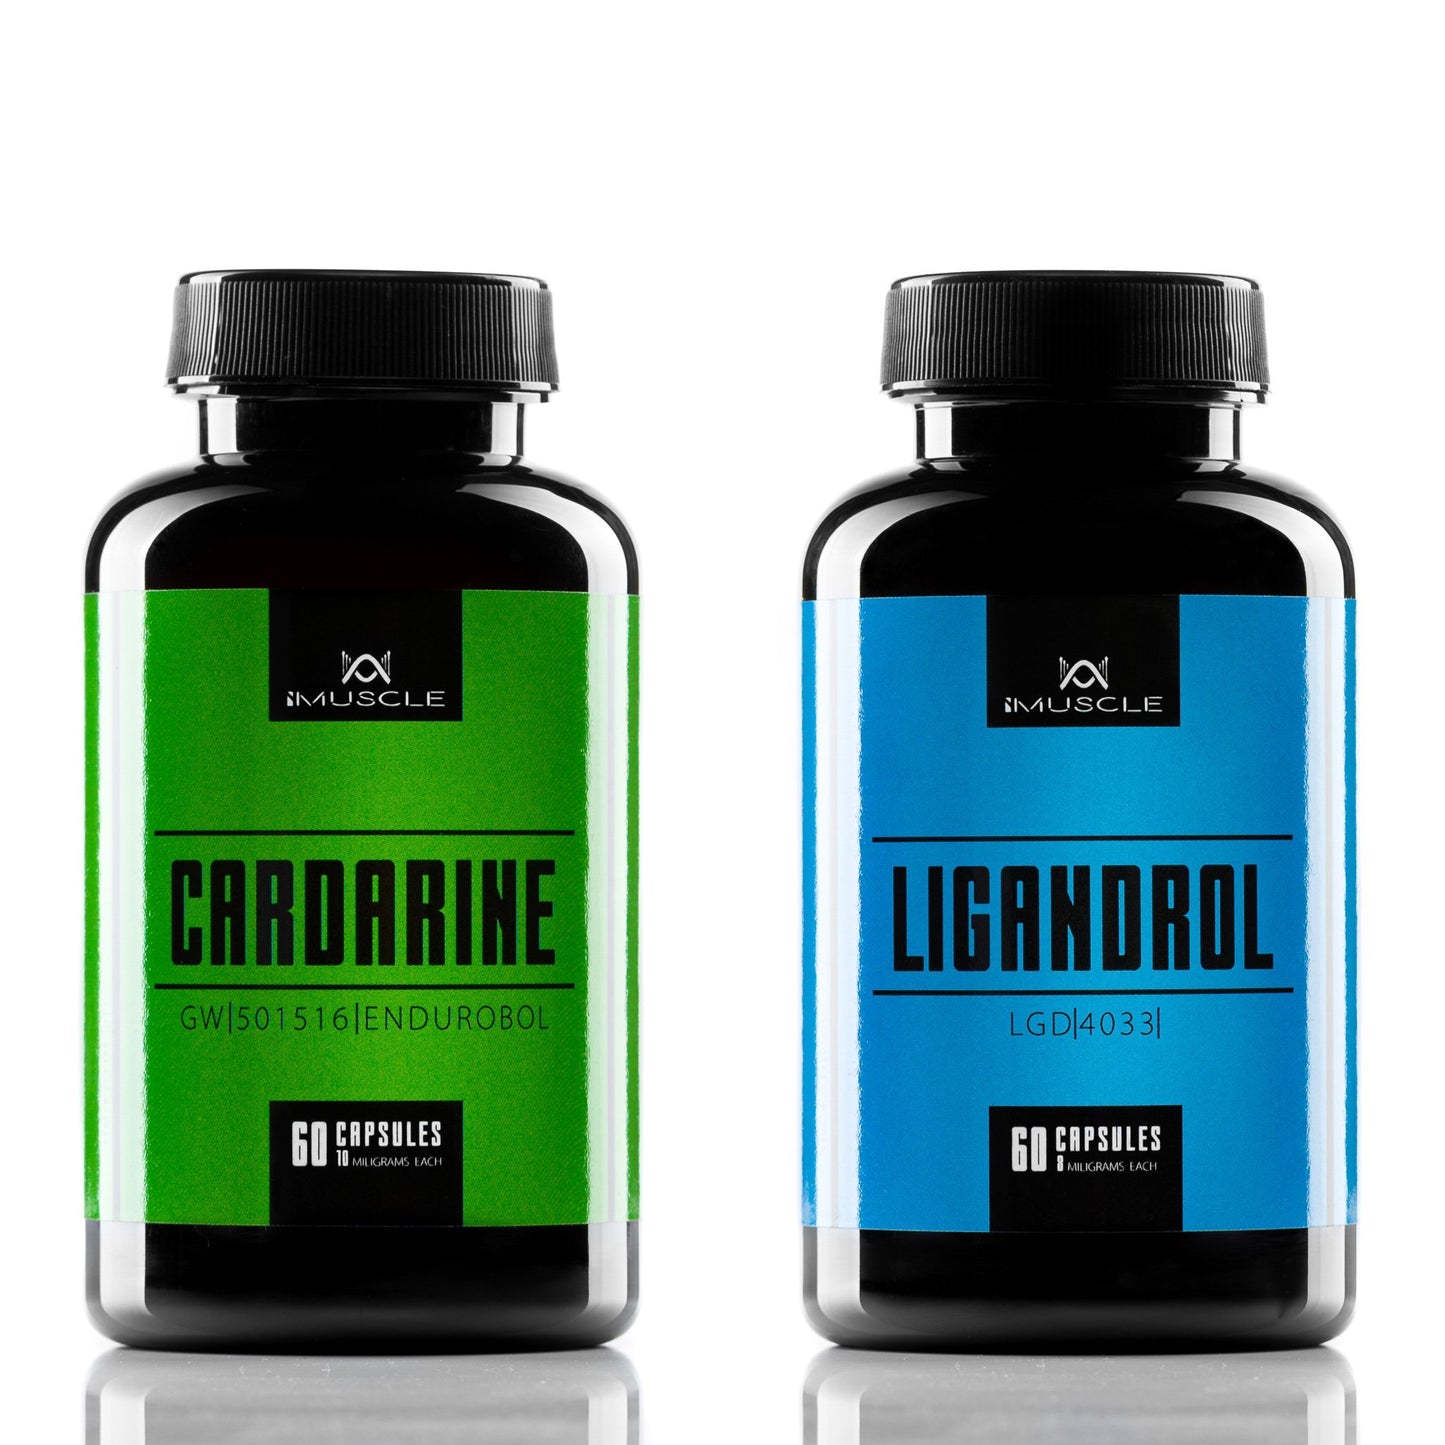 Cardarine GW501516 y Ligandrol LGD4033